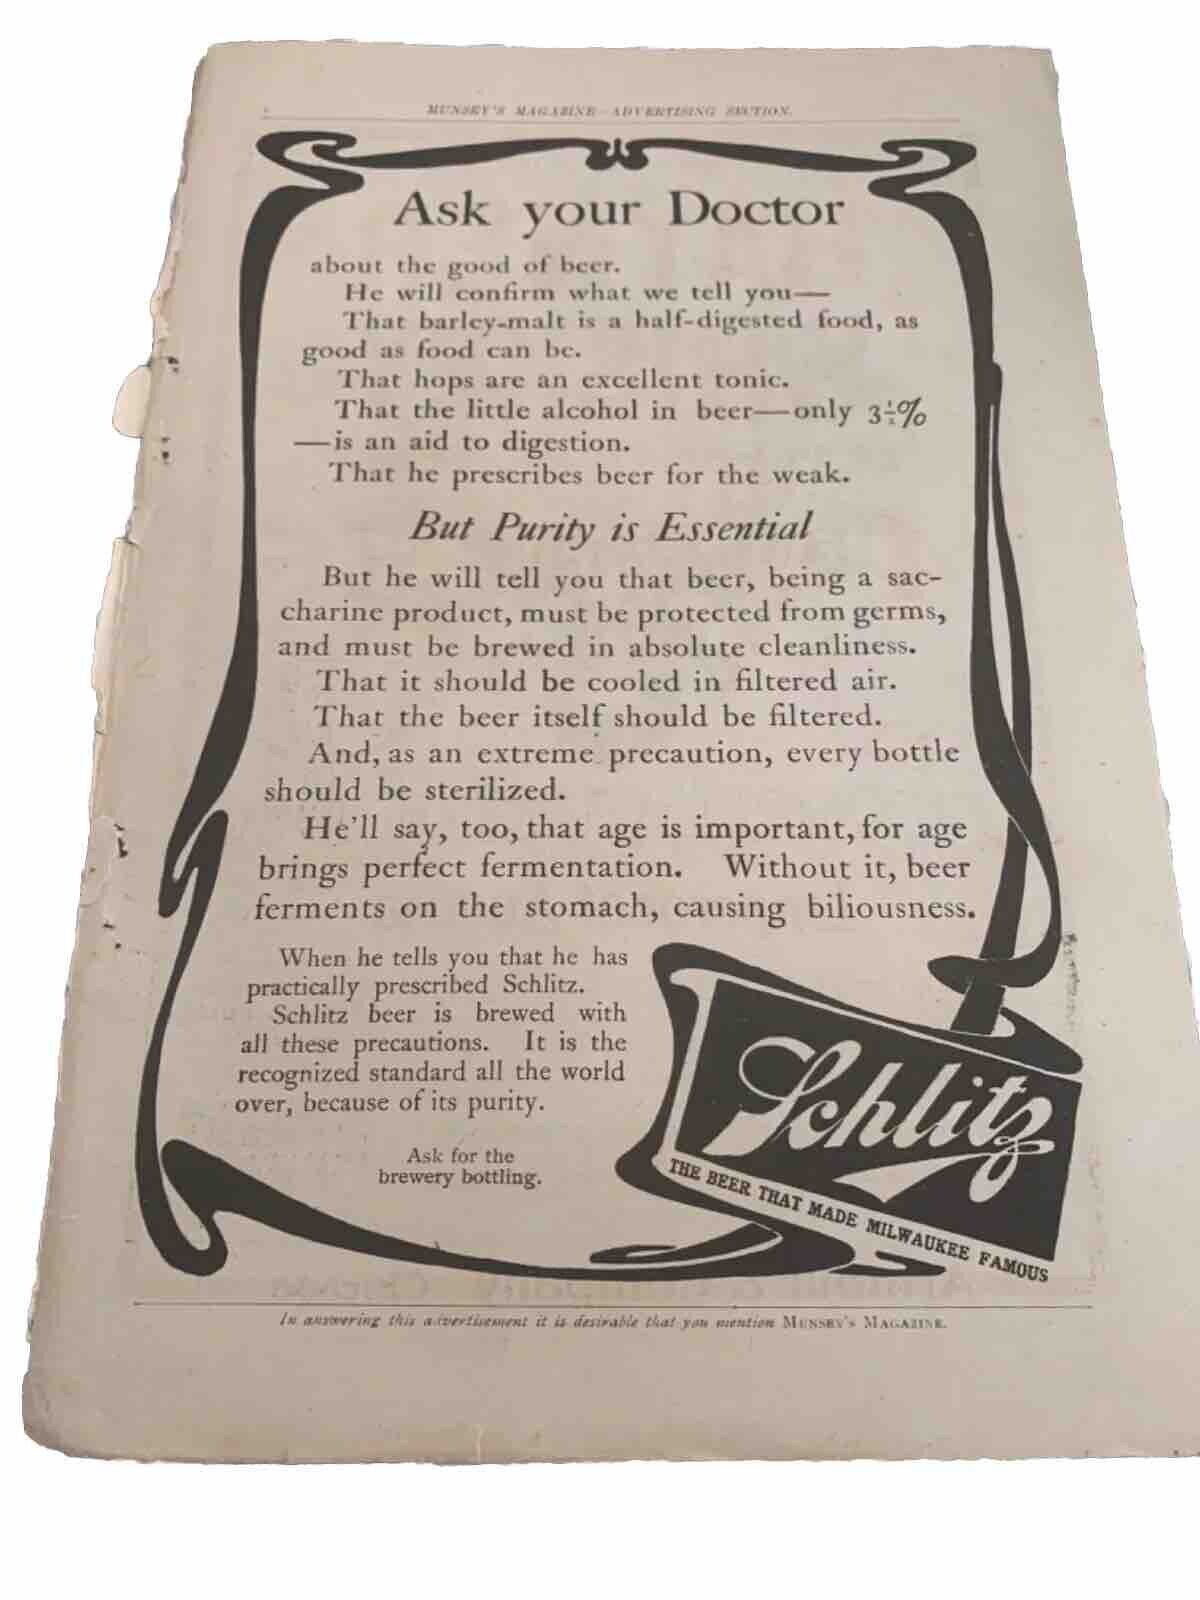 Schlitz Beer Ask Your Doctor Print Ad VINTAGE 1904 ADVERTISEMENT 11”x 8”